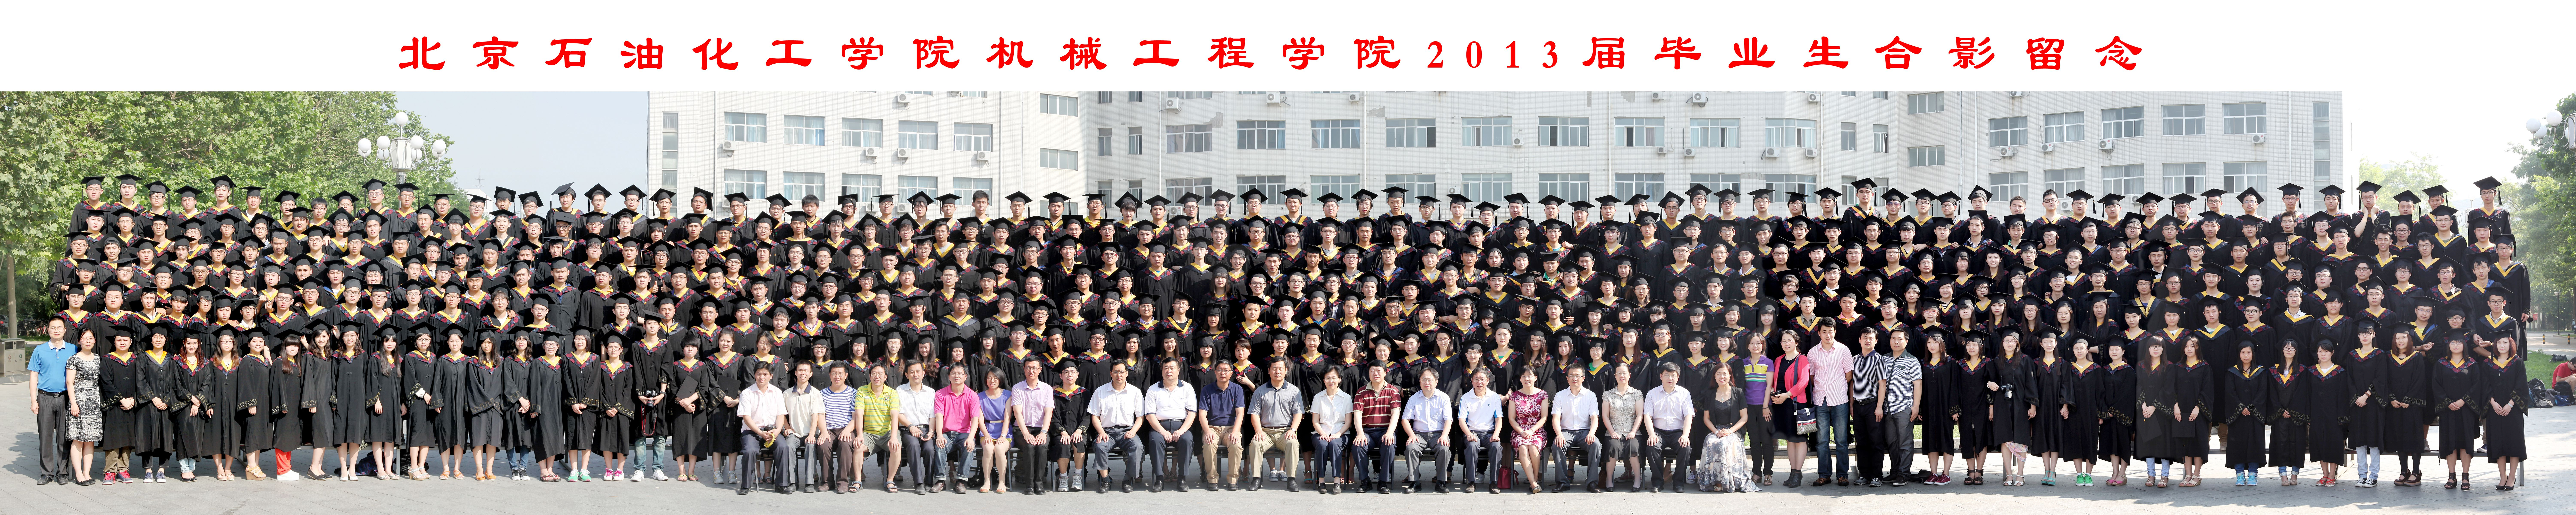 银河集团:198net有限公司机械工程学院2013届毕业生合影-1.jpg